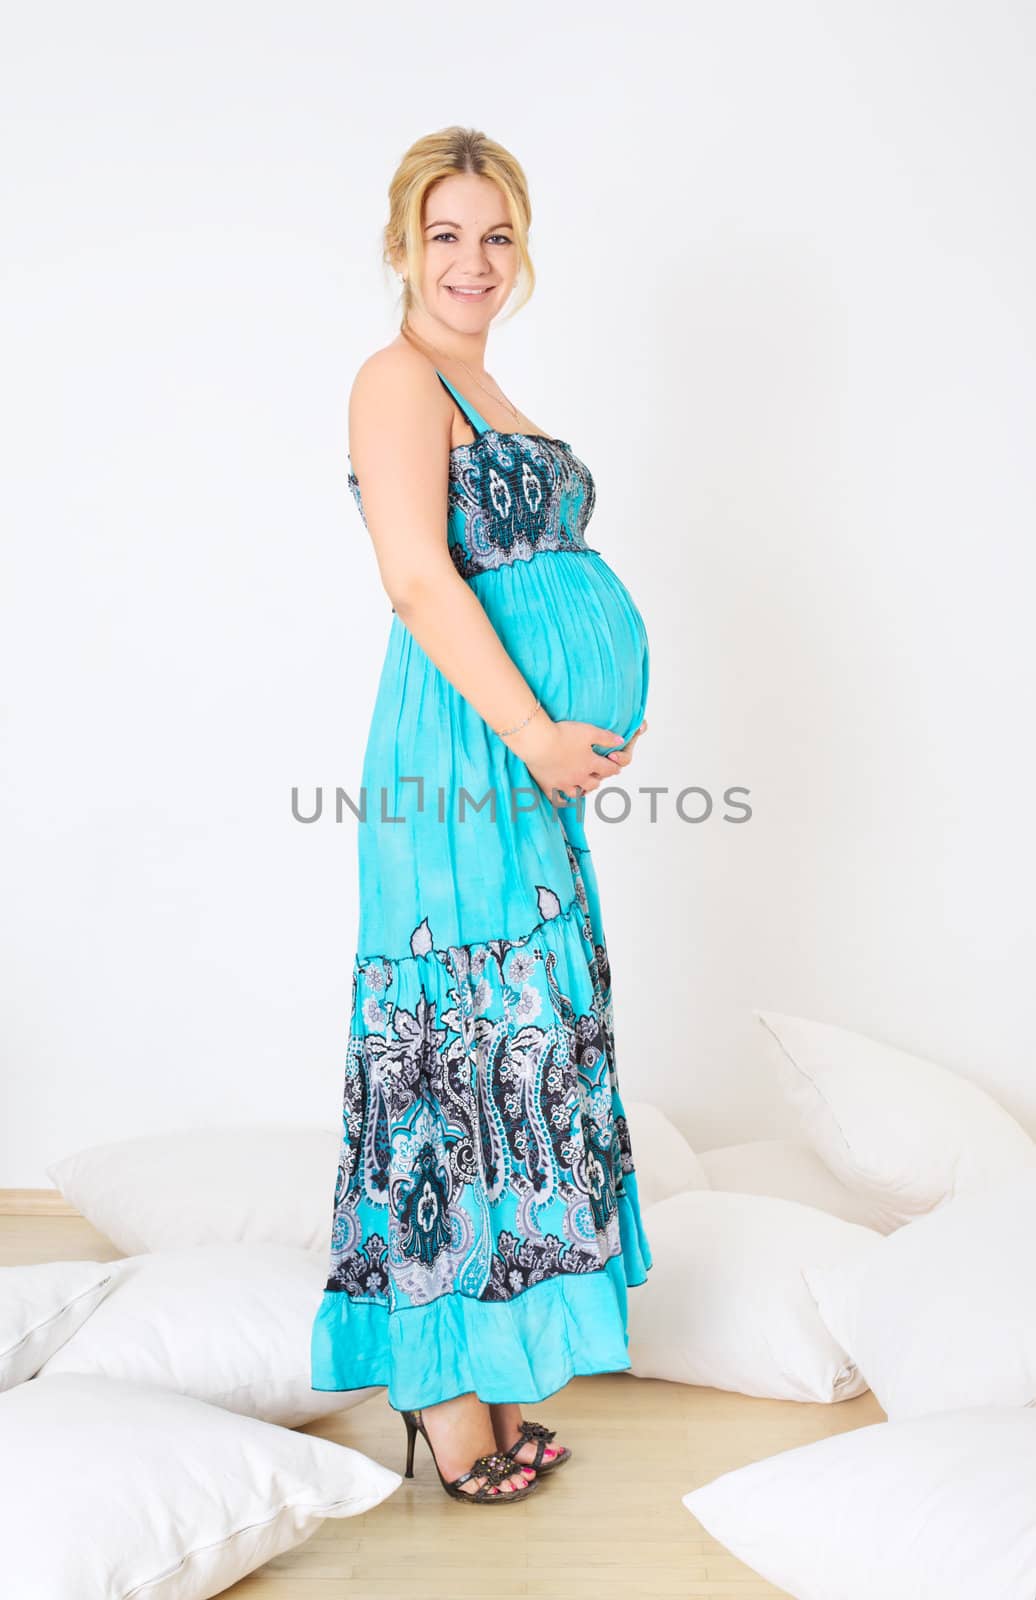 Smiling Pregnant Woman by petr_malyshev